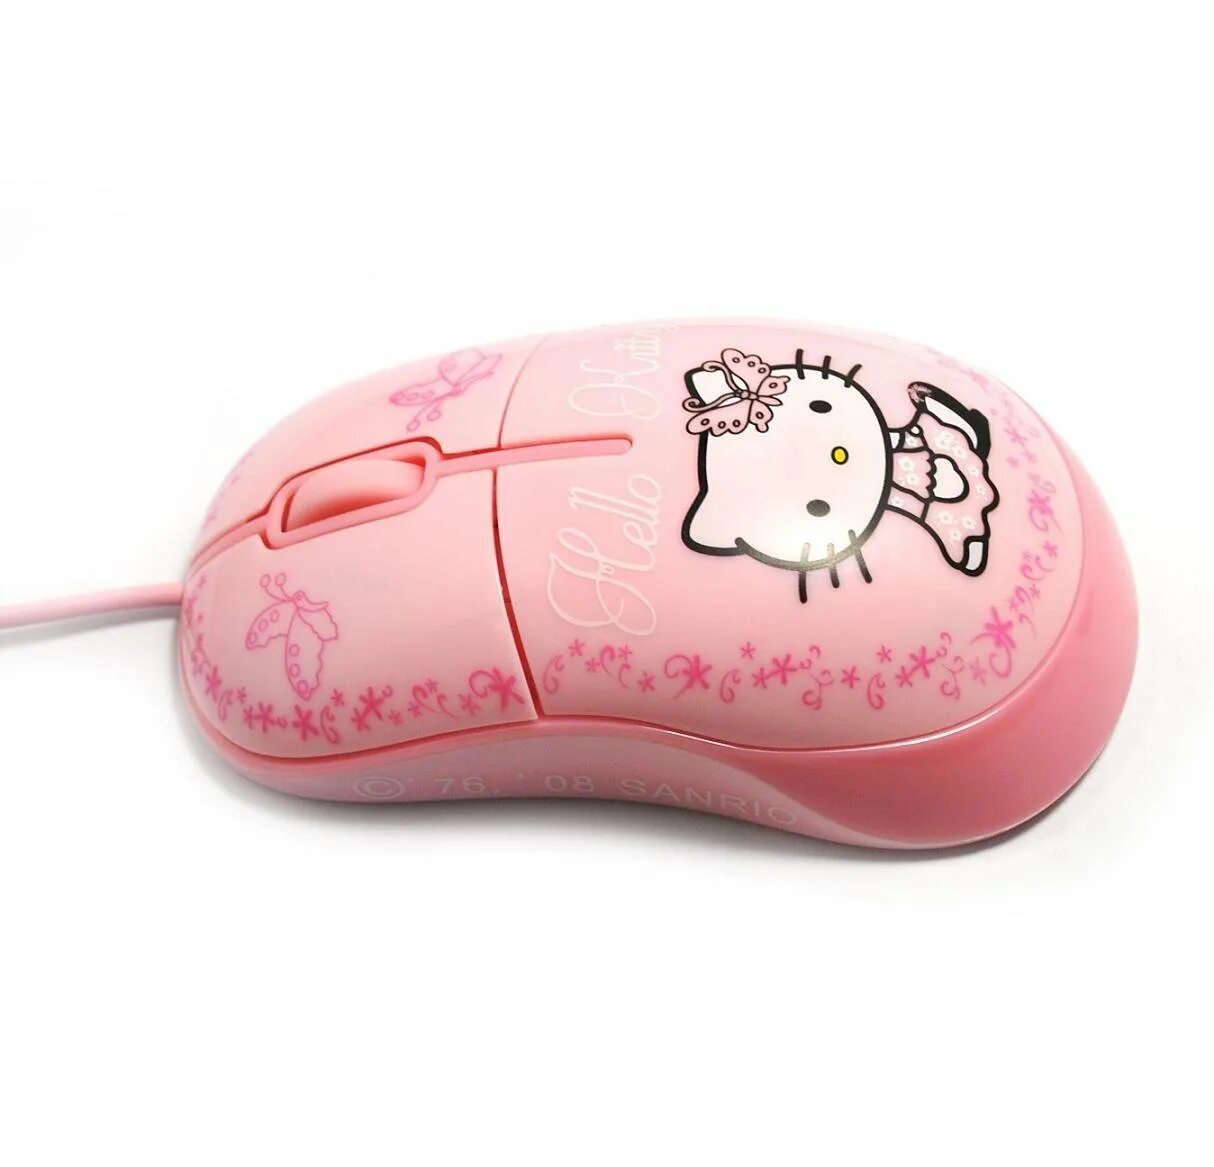 Мыши москва. Мышка с Хеллоу Китти. Мышь компьютерная розовая с Хеллоу Китти. Компьютерные мышки для девочек. Детская компьютерная мышь.